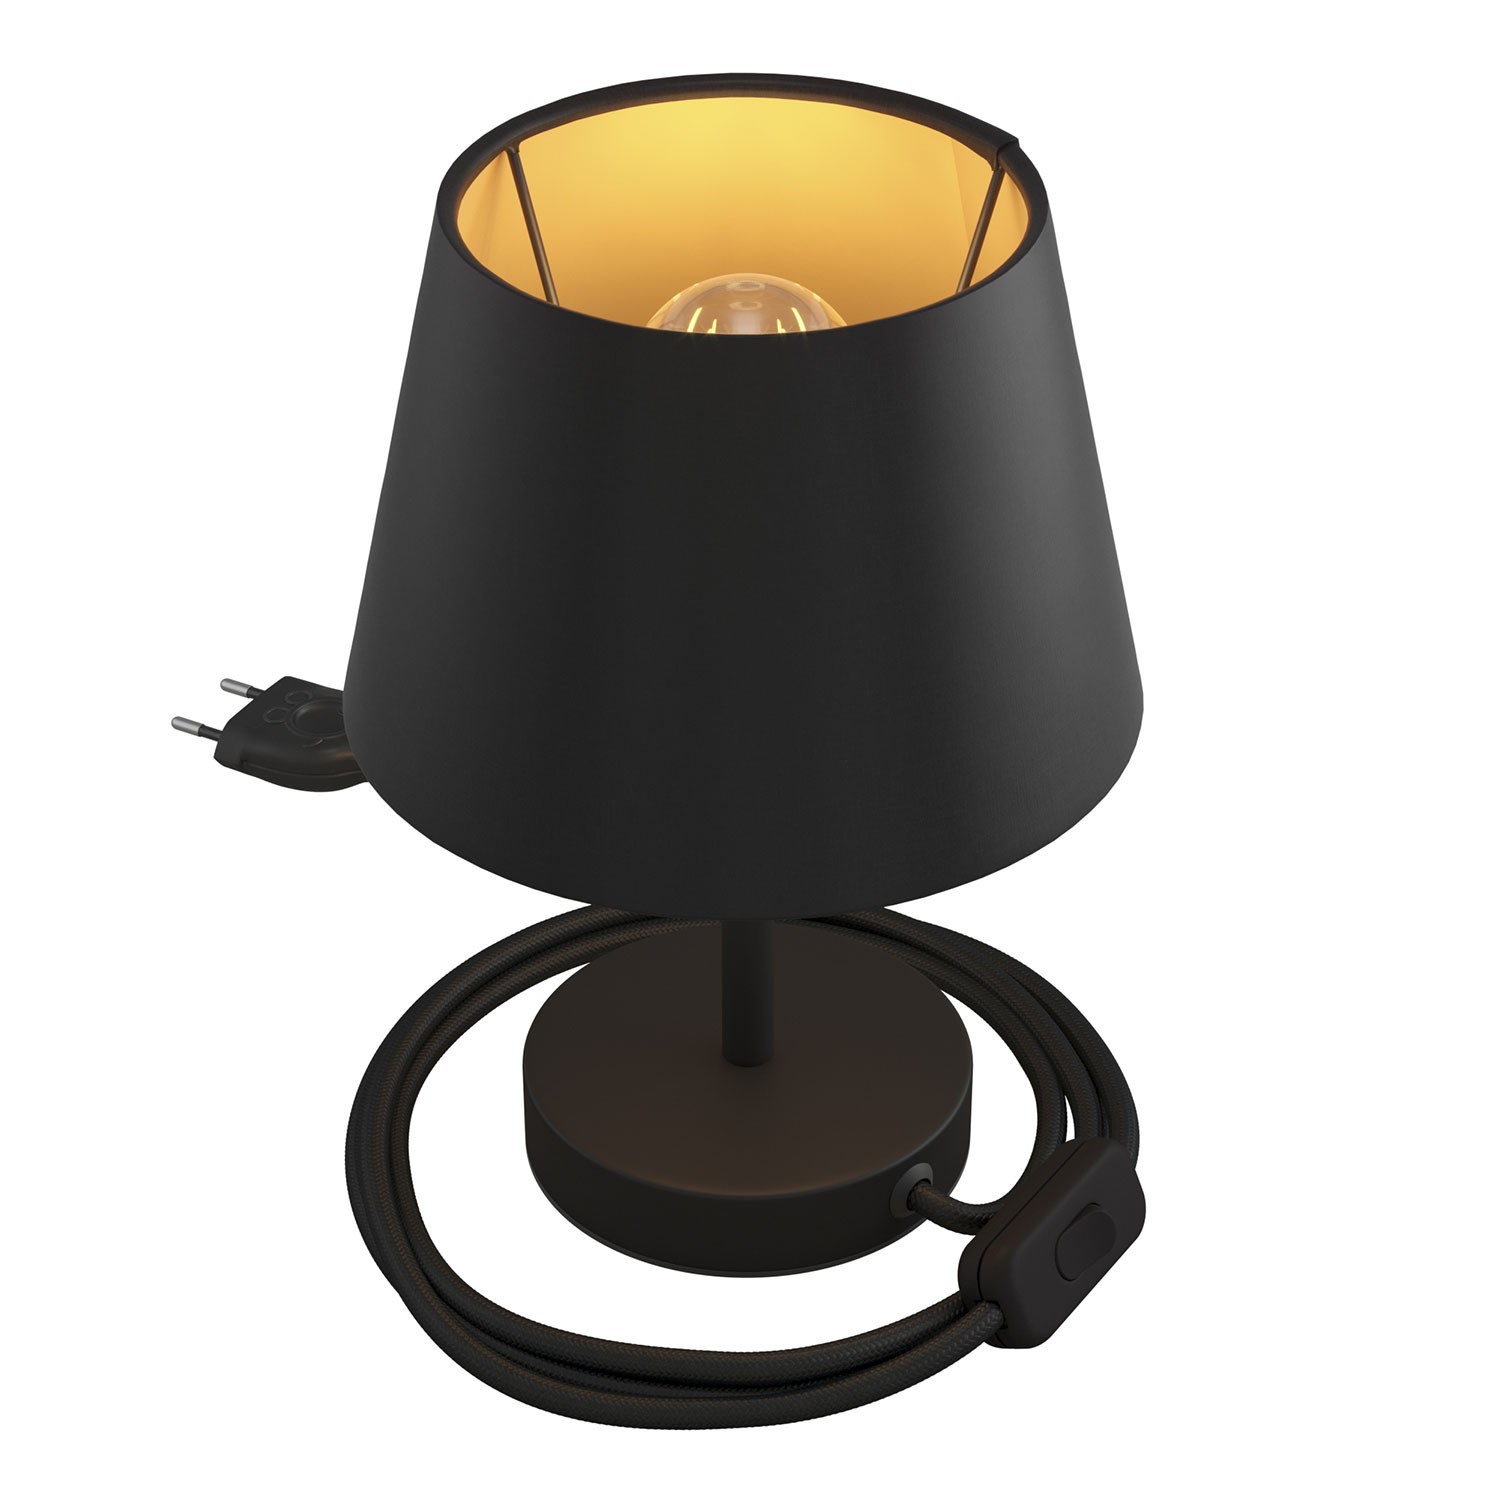 Alzaluce se stínidlem Impero, kovová stolní lampa se zástrčkou, kabelem a vypínačem